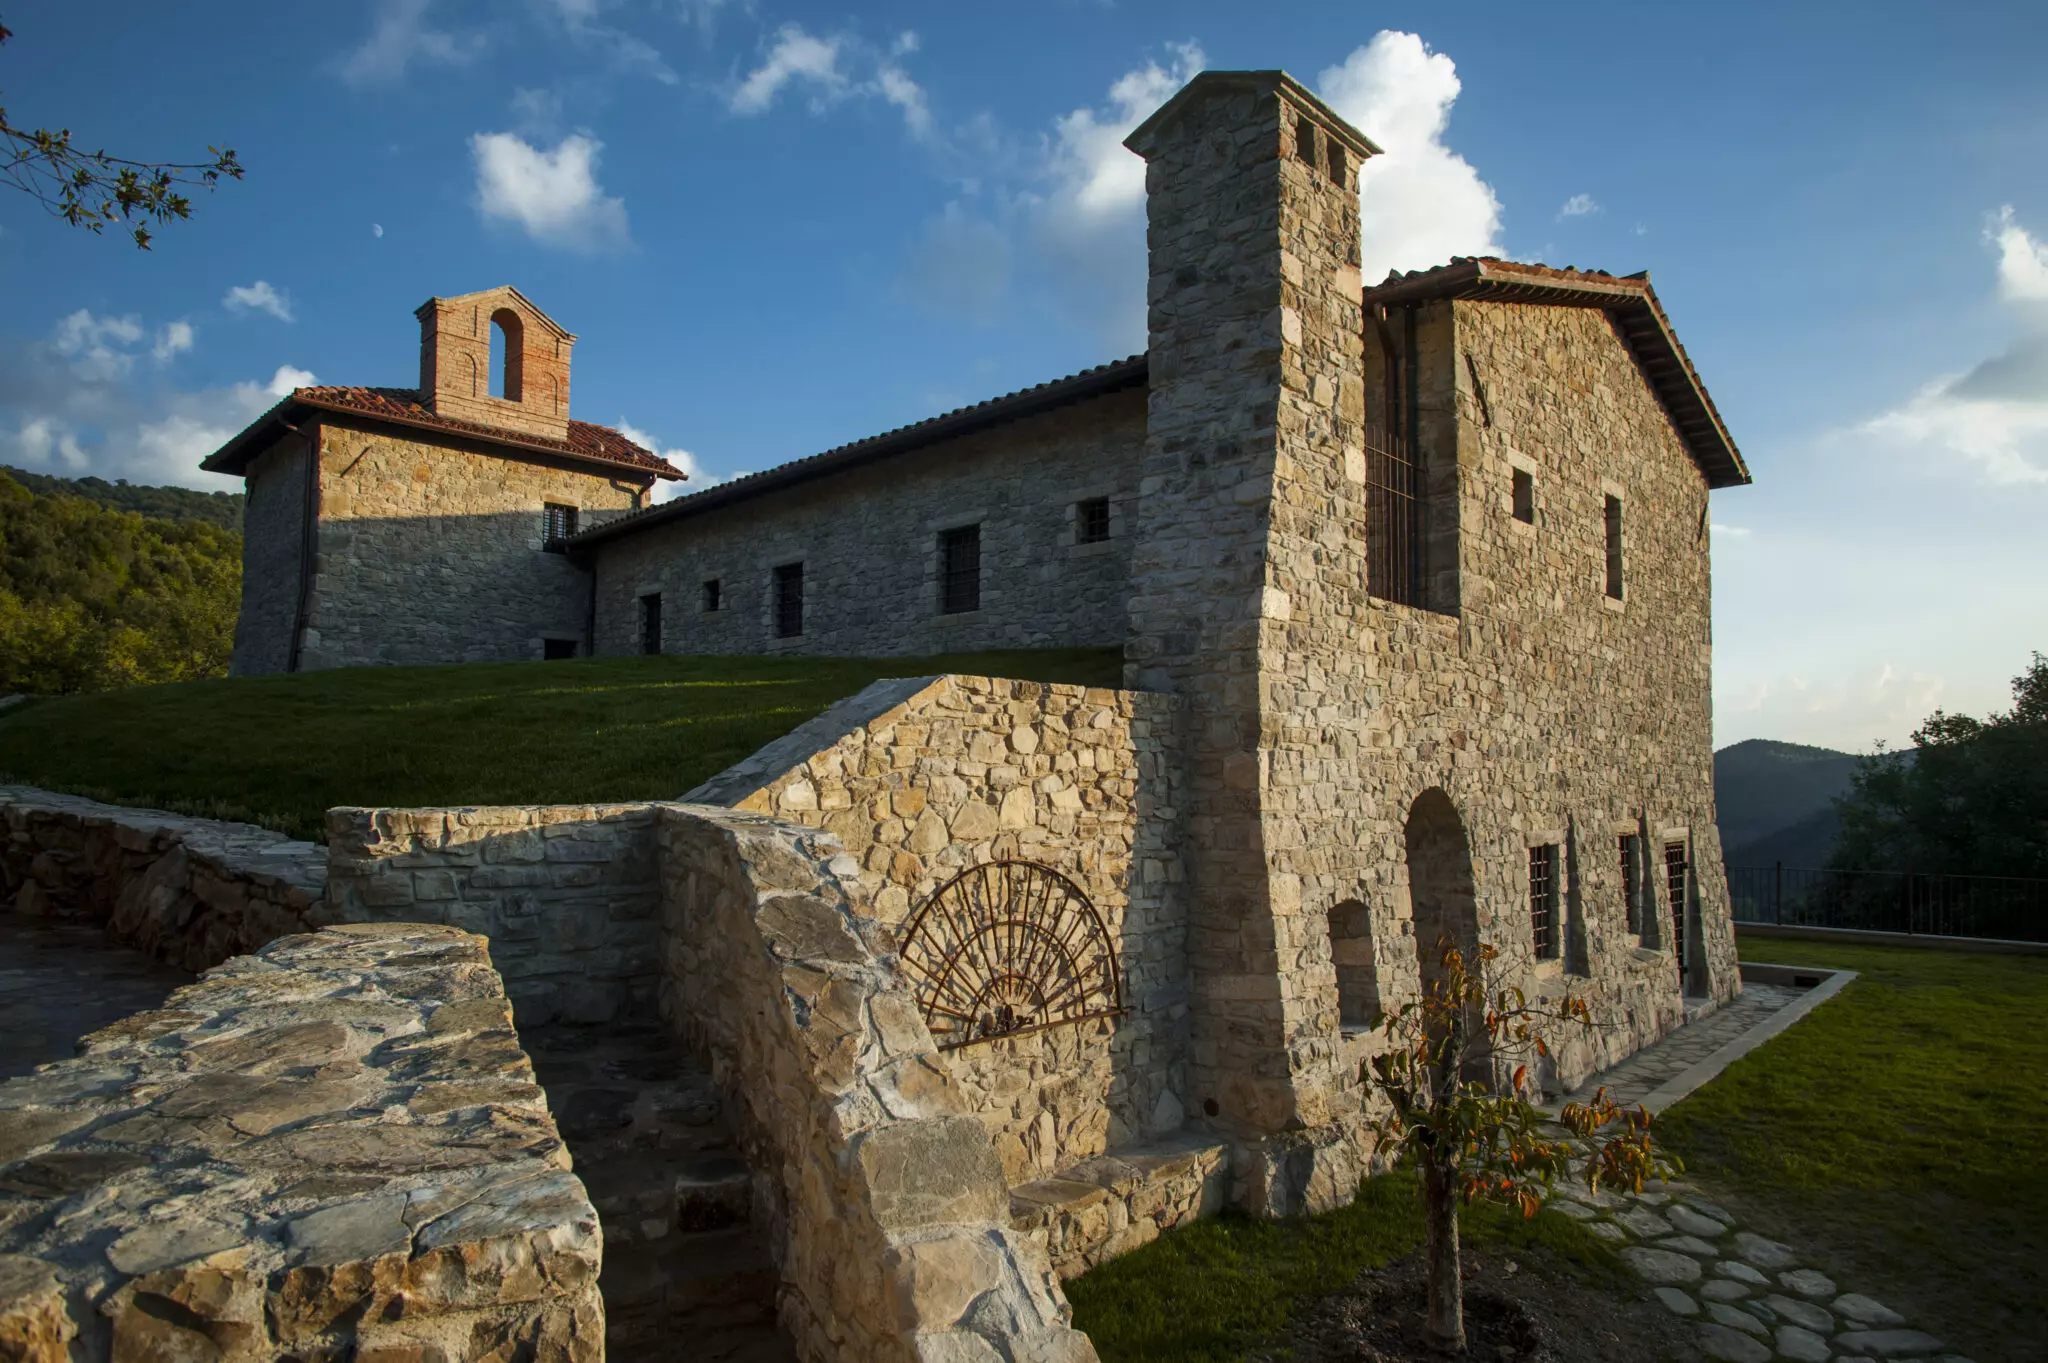 Nest Italy - Monastery in Umbria